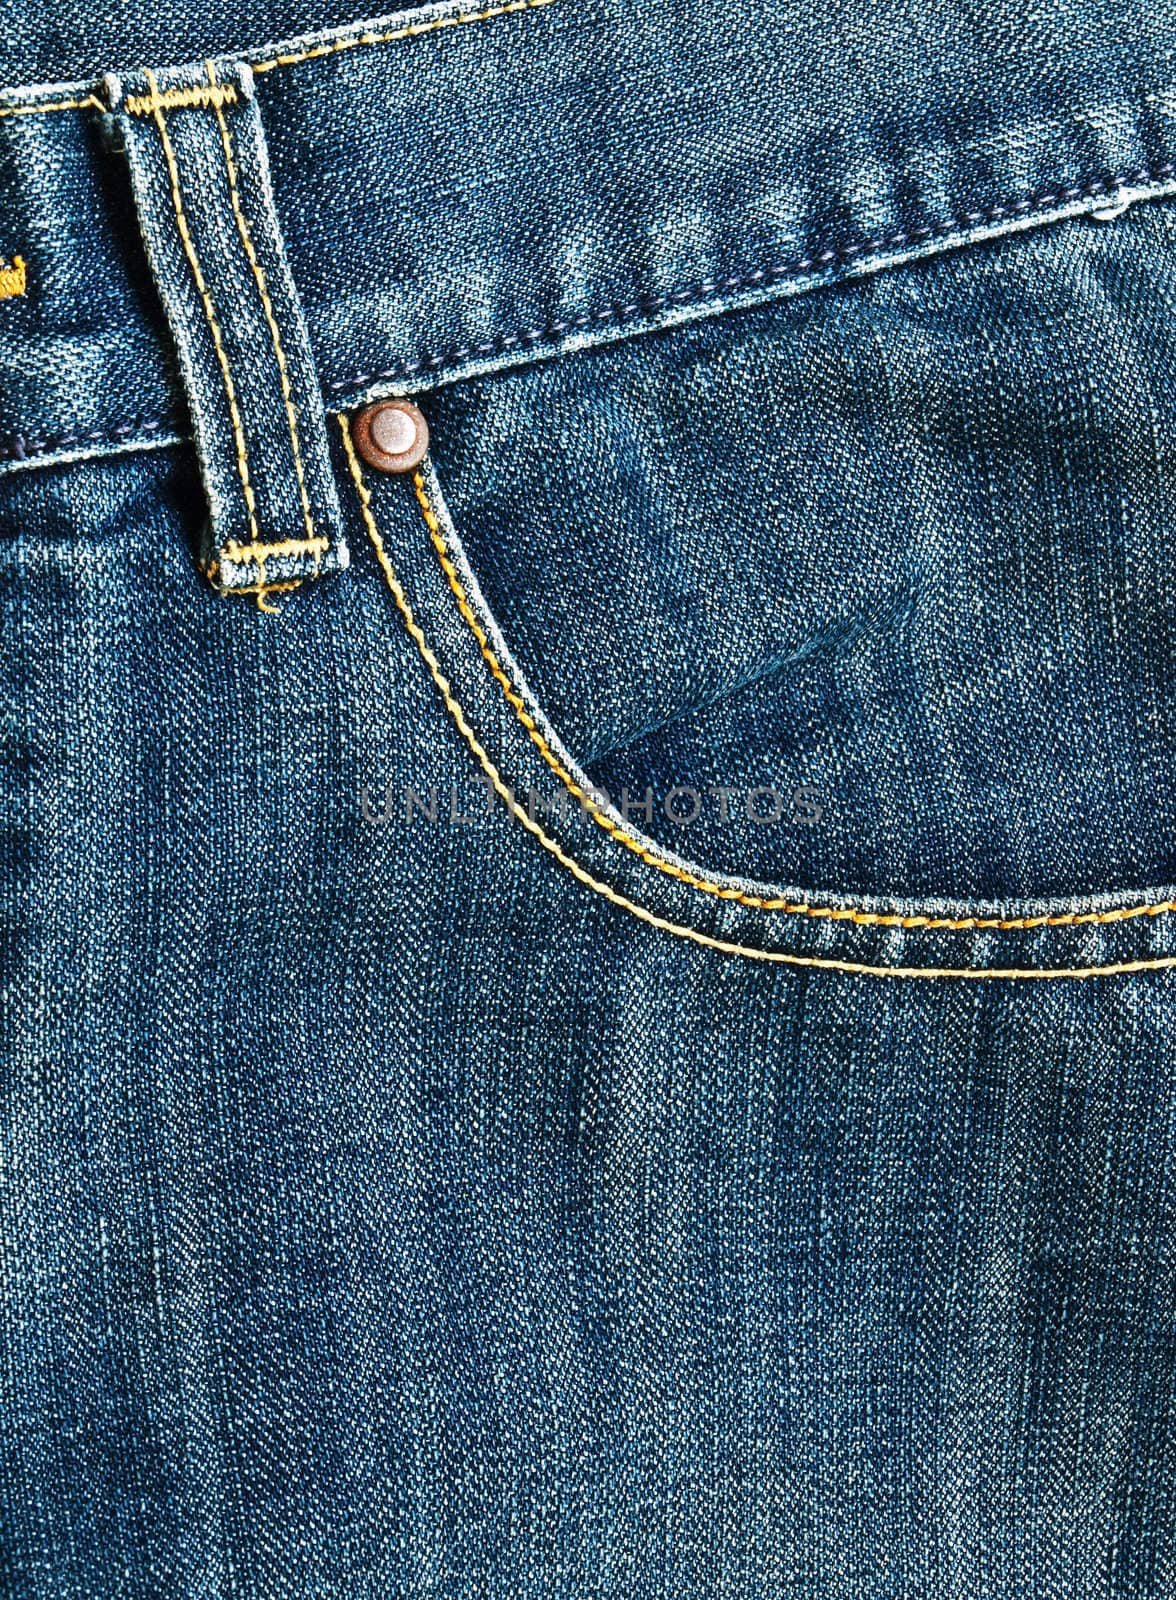 Pocket on a blue jean by gururugu